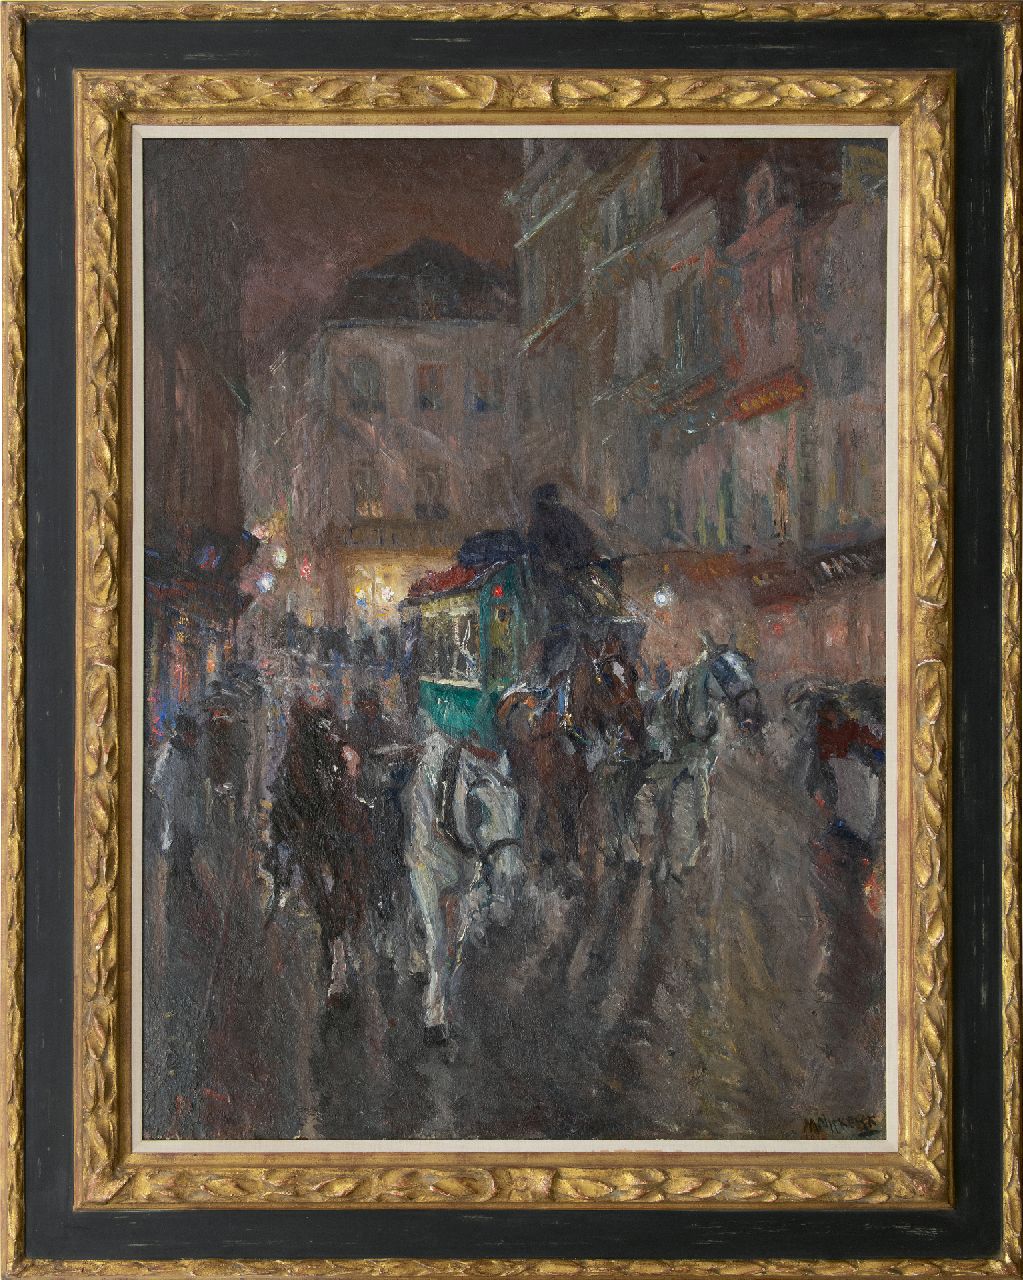 Niekerk M.J.  | 'Maurits' Joseph Niekerk | Gemälde zum Verkauf angeboten | Omnibus bei Abend, Öl auf Leinwand 115,5 x 85,3 cm, Unterzeichnet r.u. und datiert 1919